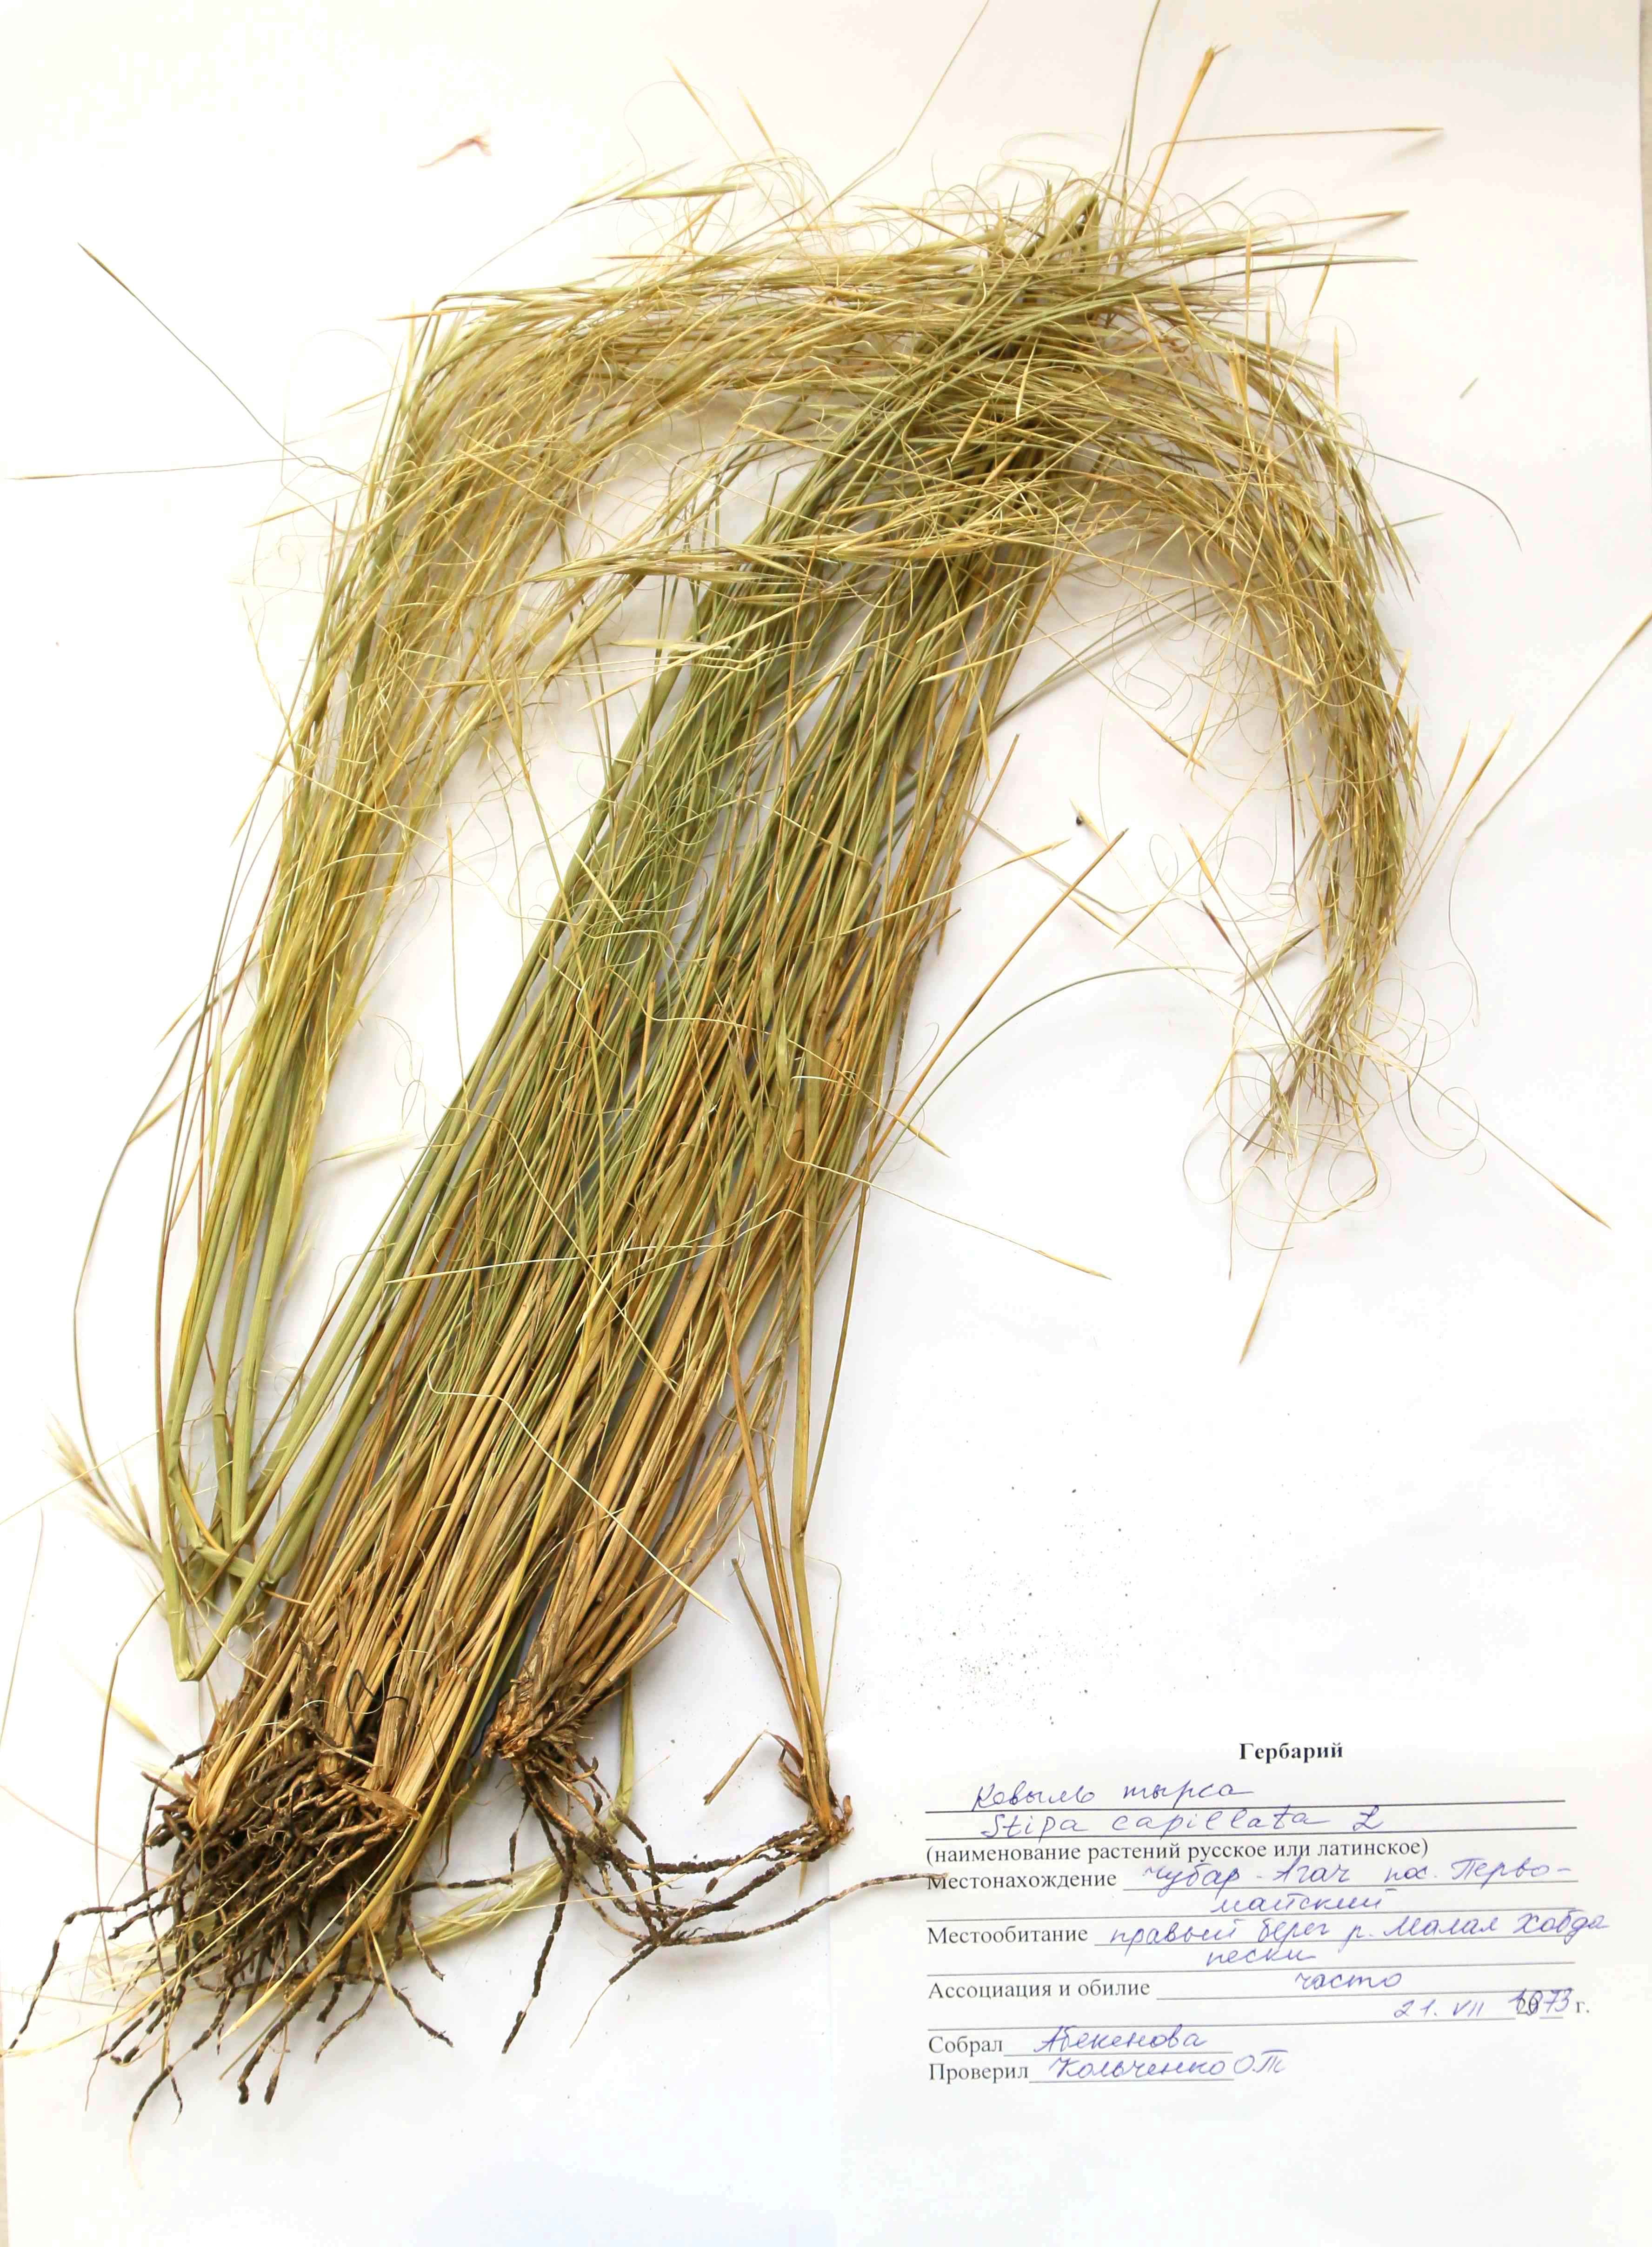 Stipa capillata L. - Ковыль волосатик, тырса - Қылтаң селеу, садақбоз қау